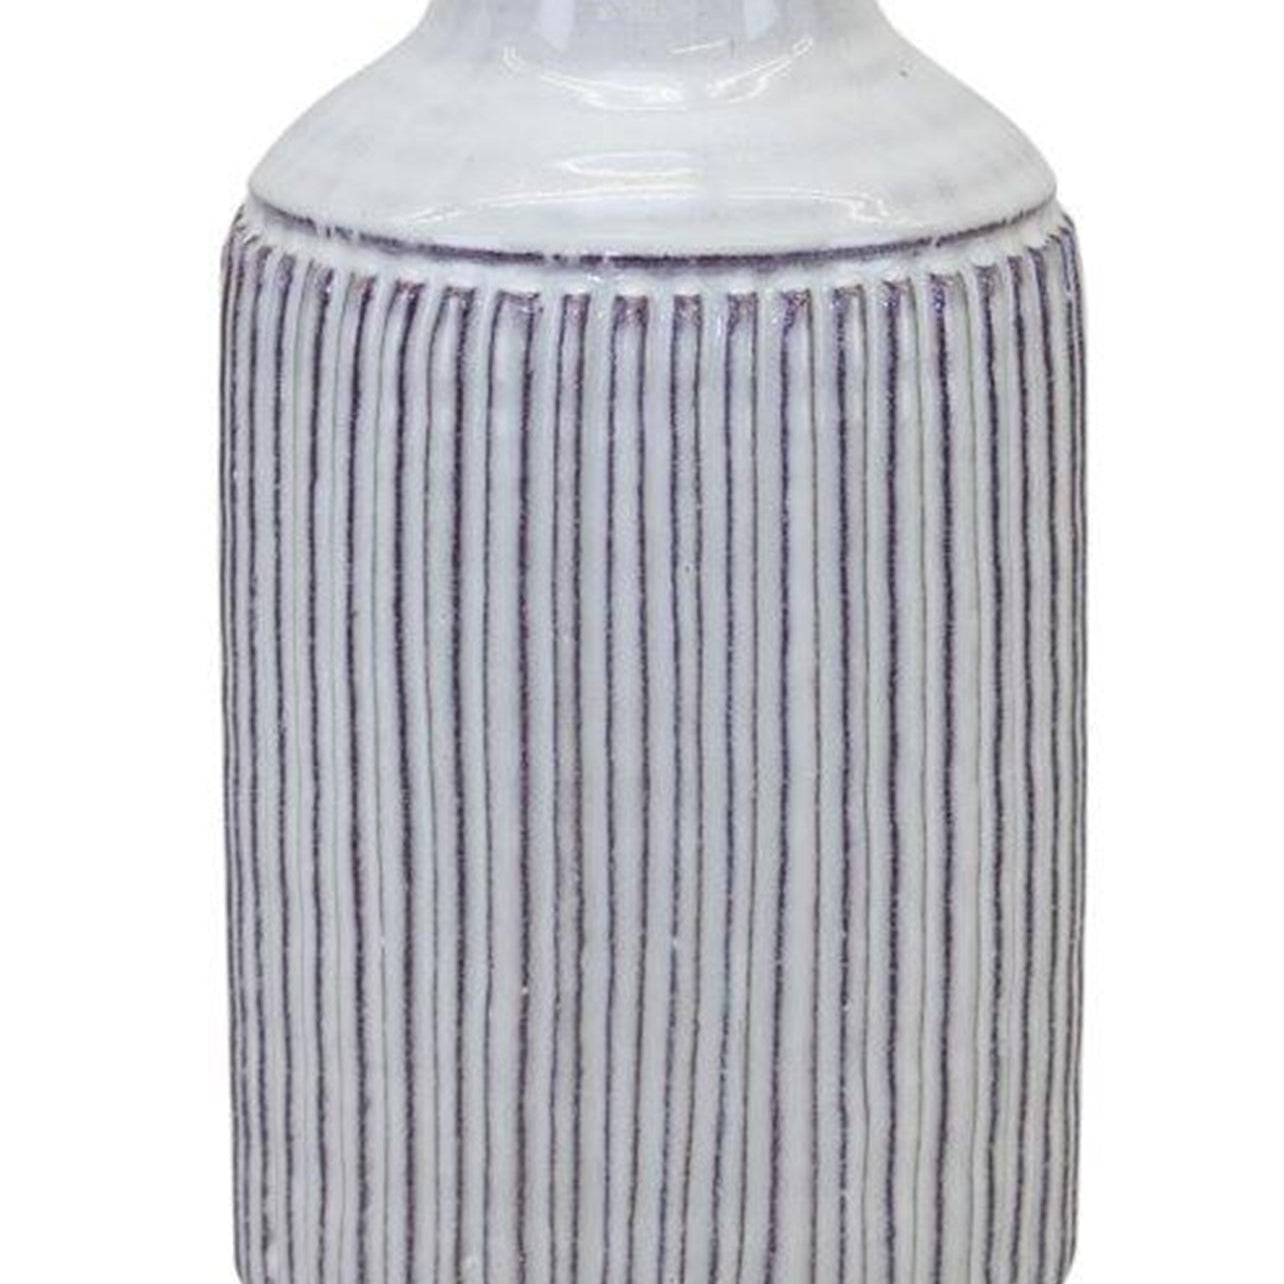 Rustic Terra Cotta Vase 10" - Vases